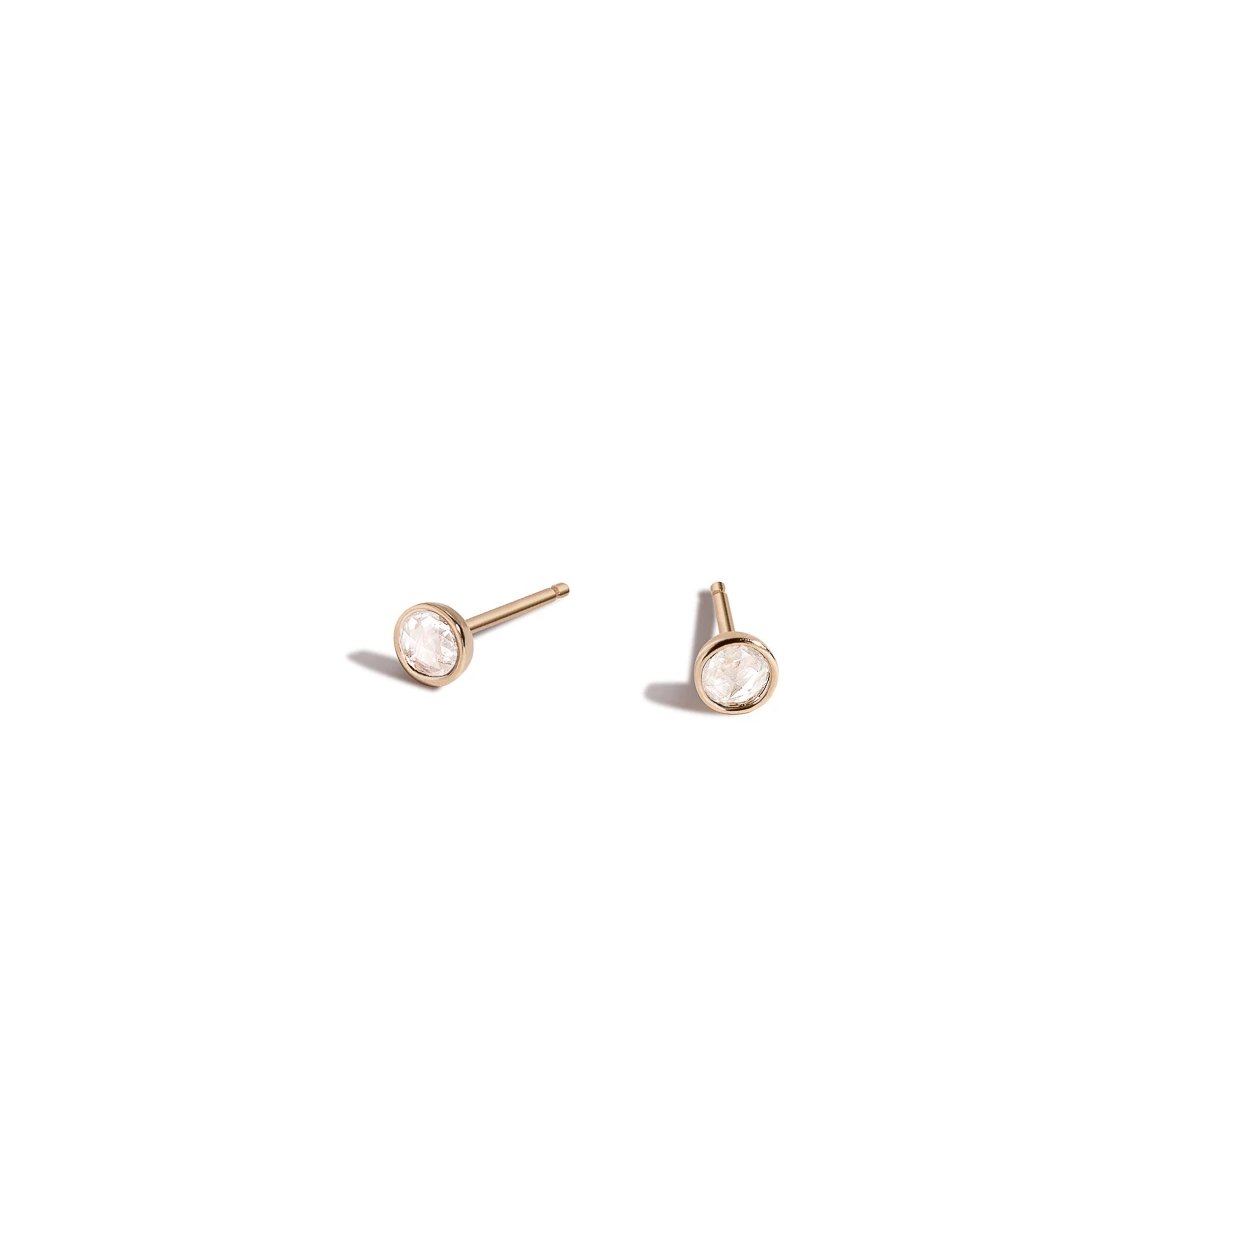 Shahla Karimi Jewelry Rose-Cut Diamond Earrings 14K Yellow Gold